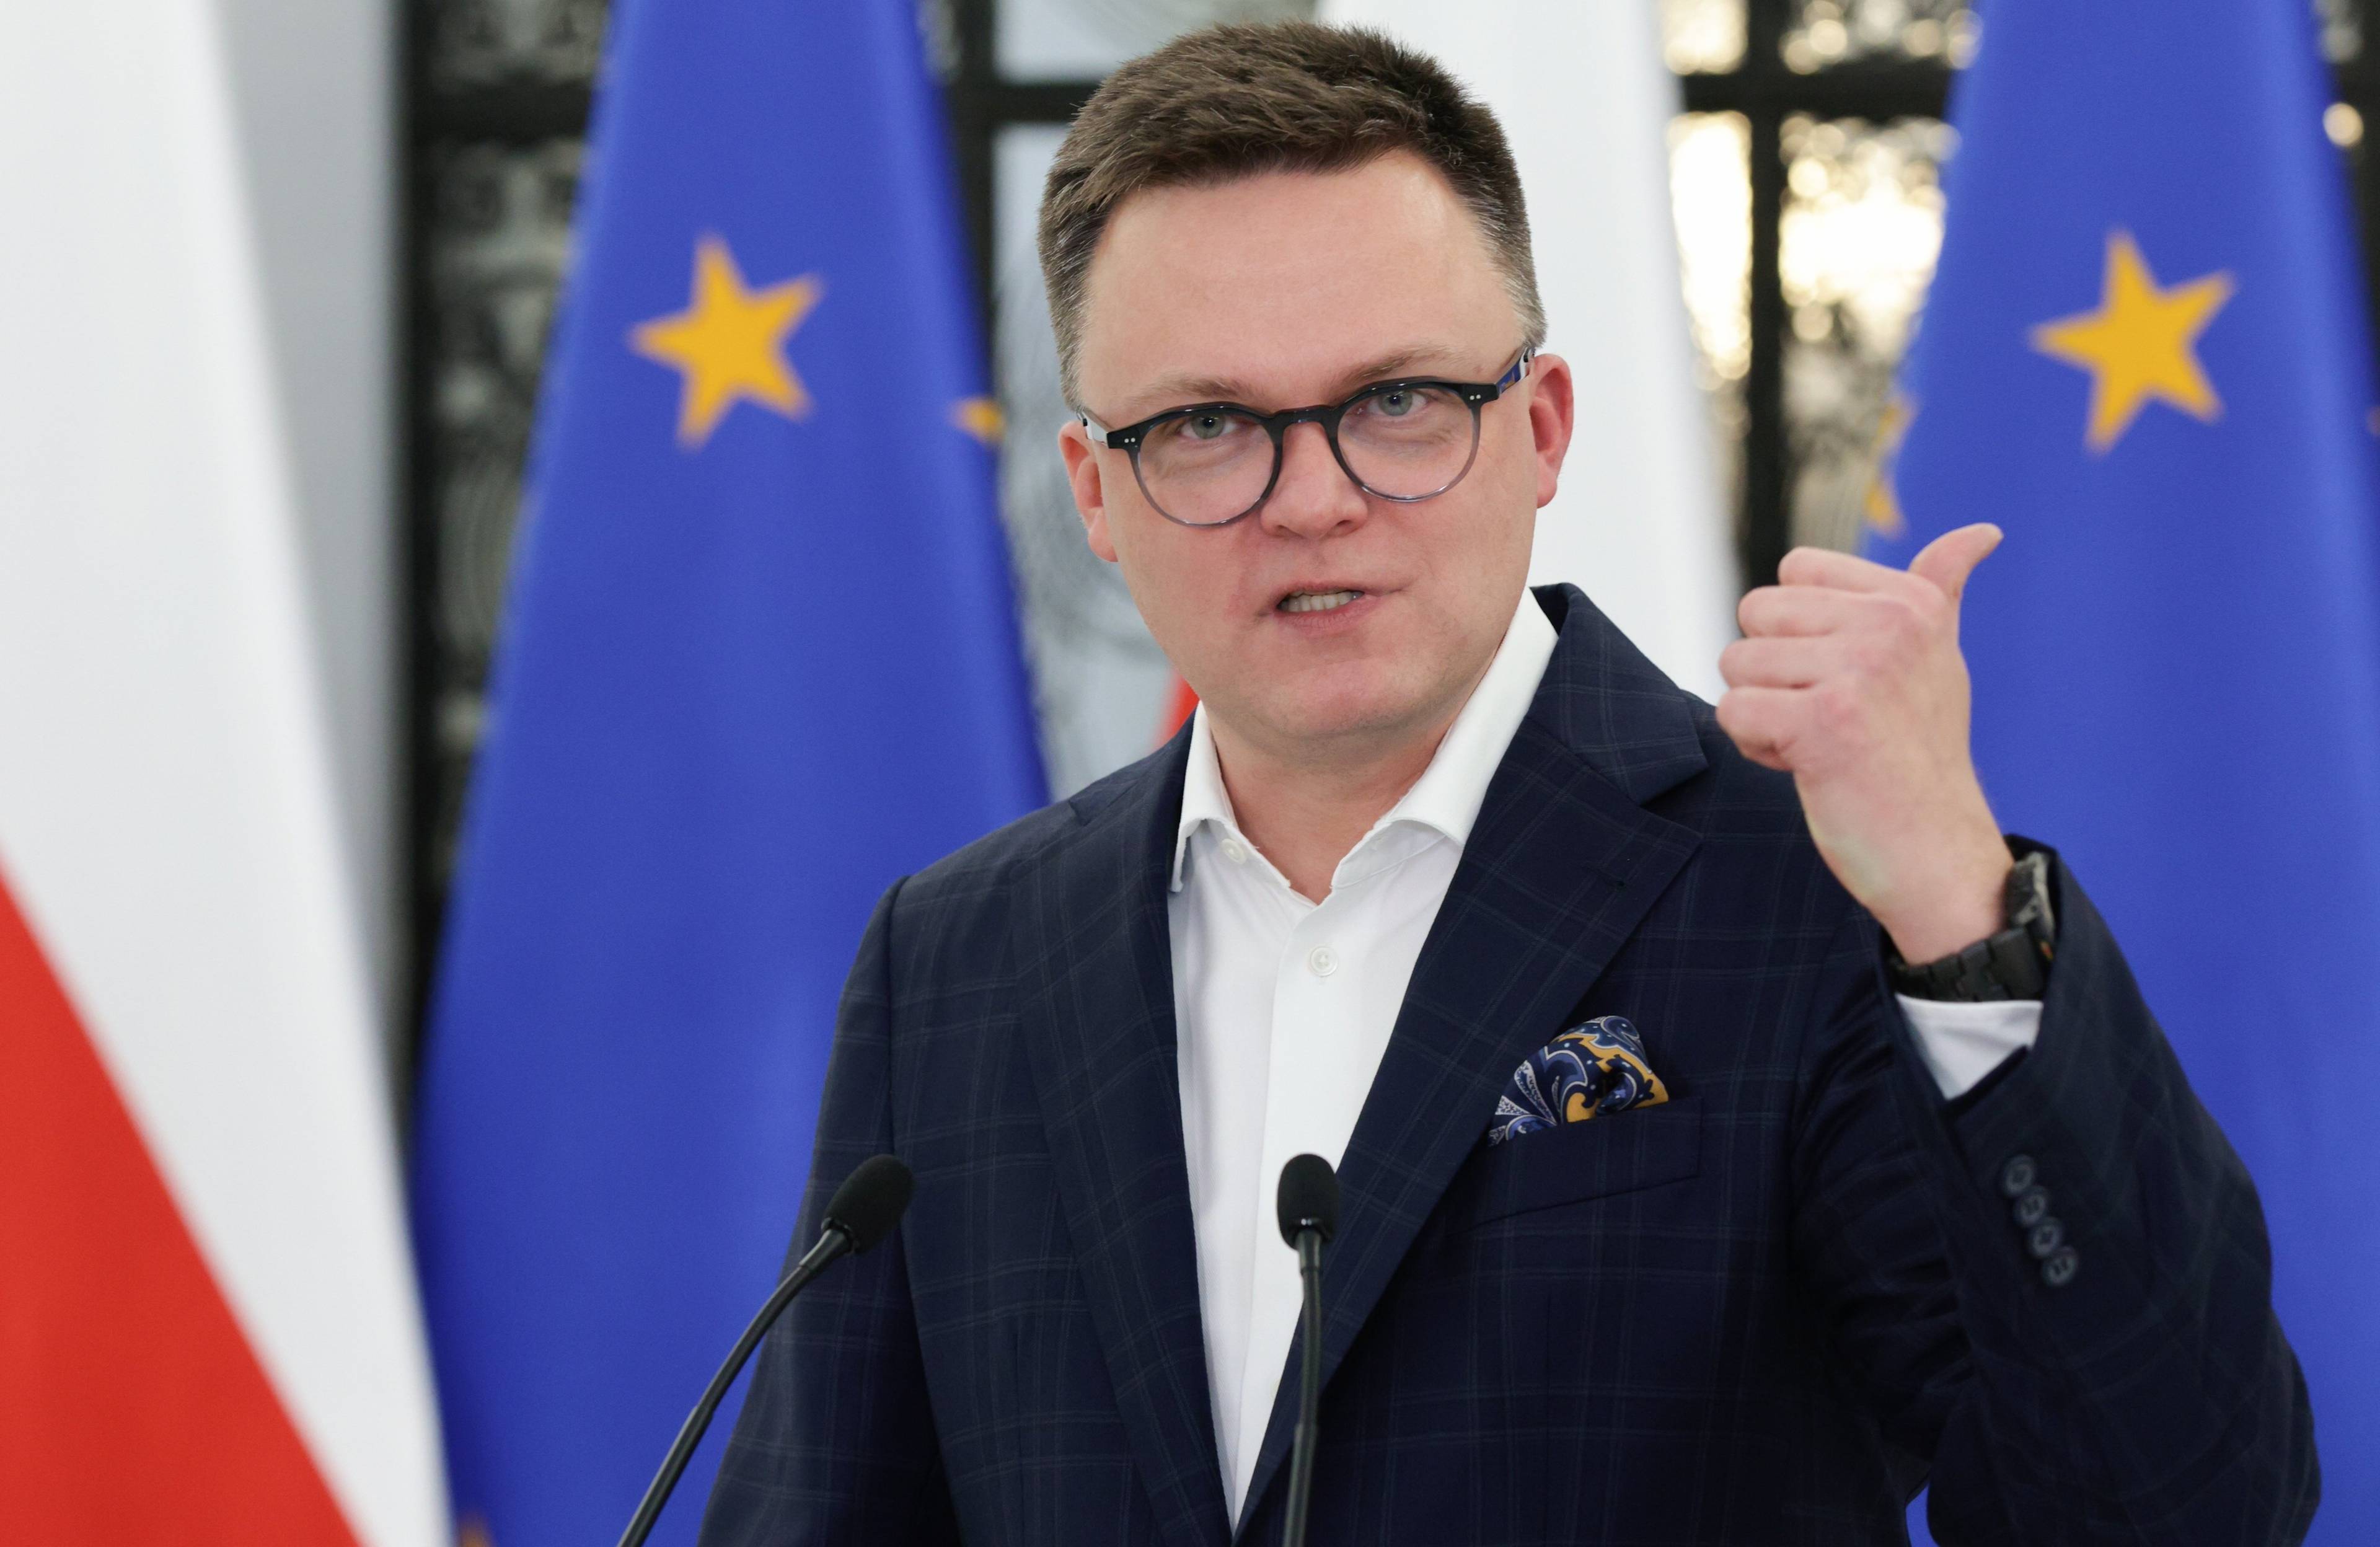 Ostrzyżony na jeża 40-latek w okularach, w garniturze bez krawata, na tle flag Polski i UE